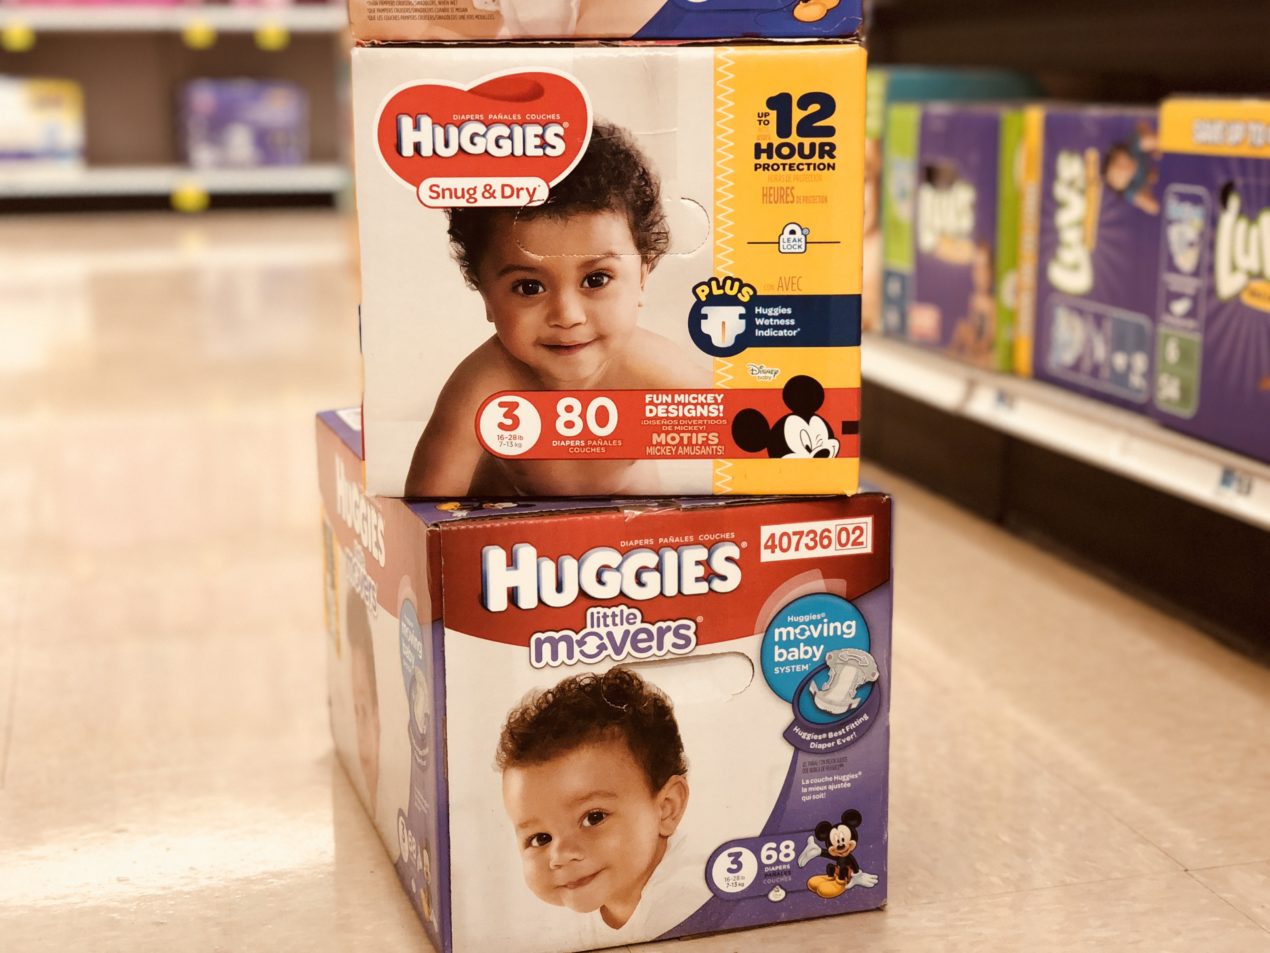 Huggies diapers box